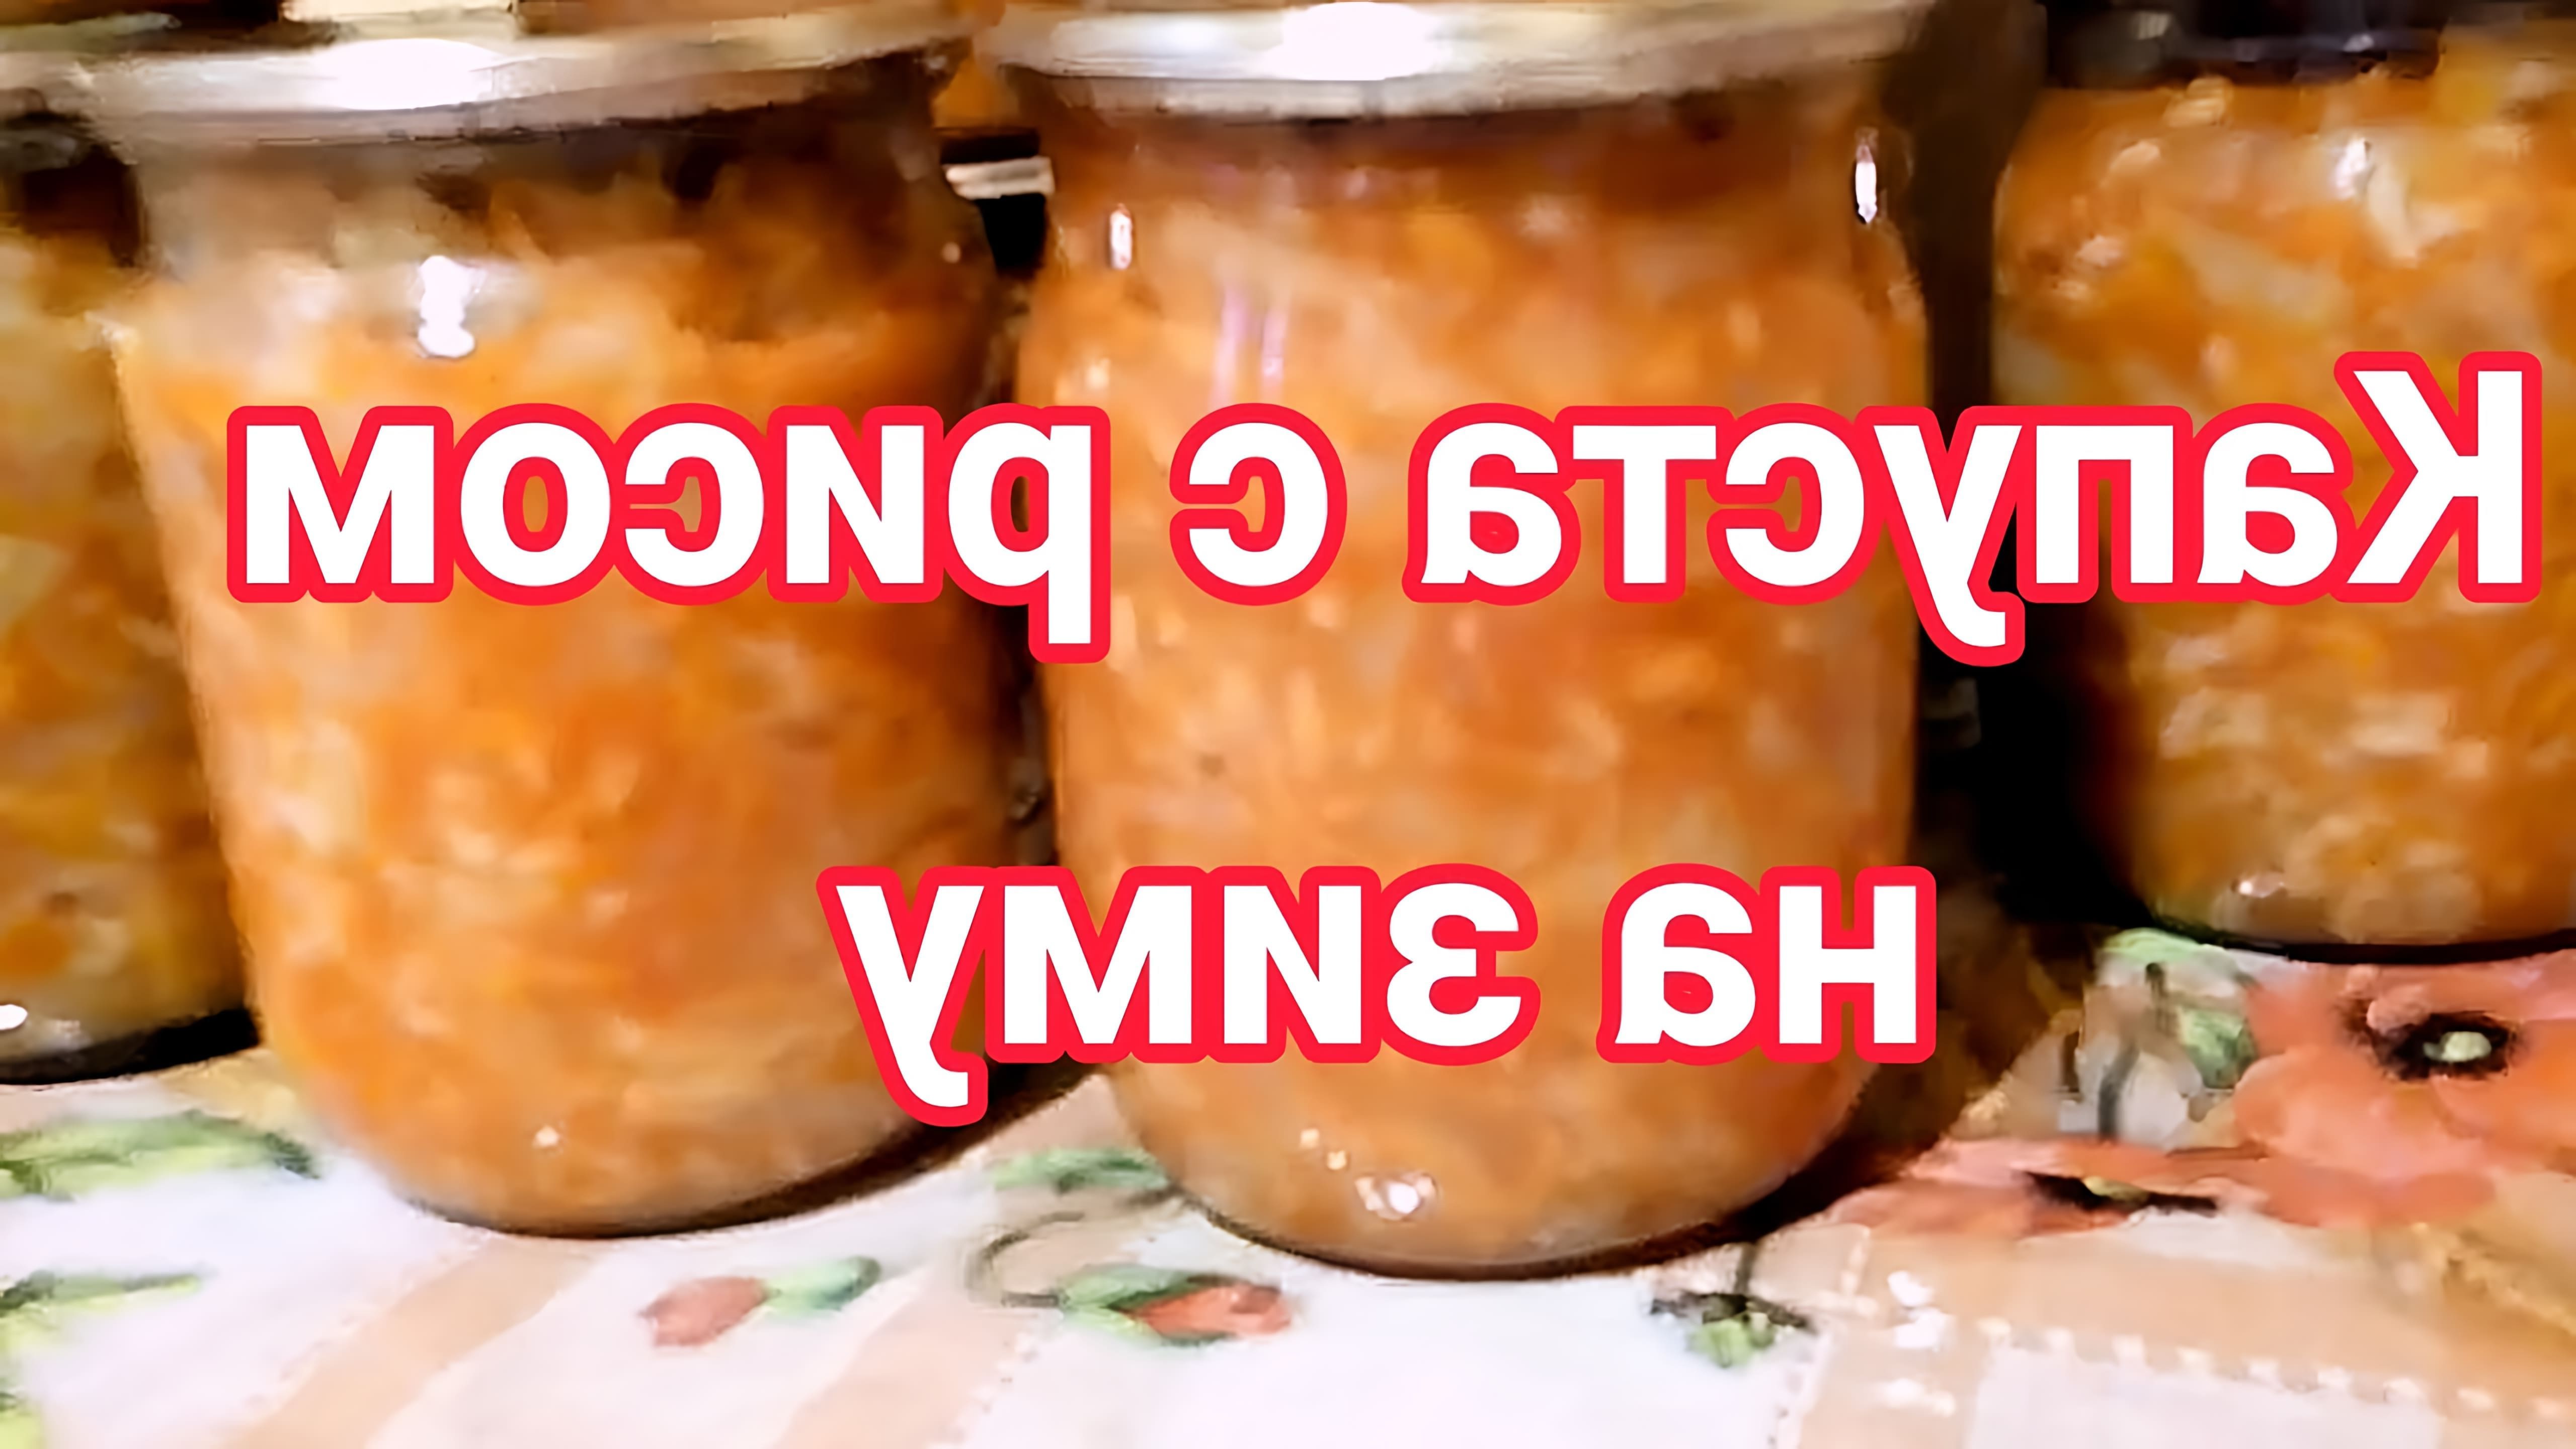 В этом видео-ролике будет представлен рецепт приготовления капусты (баклажанов) с рисом на зиму, который был популярен в СССР